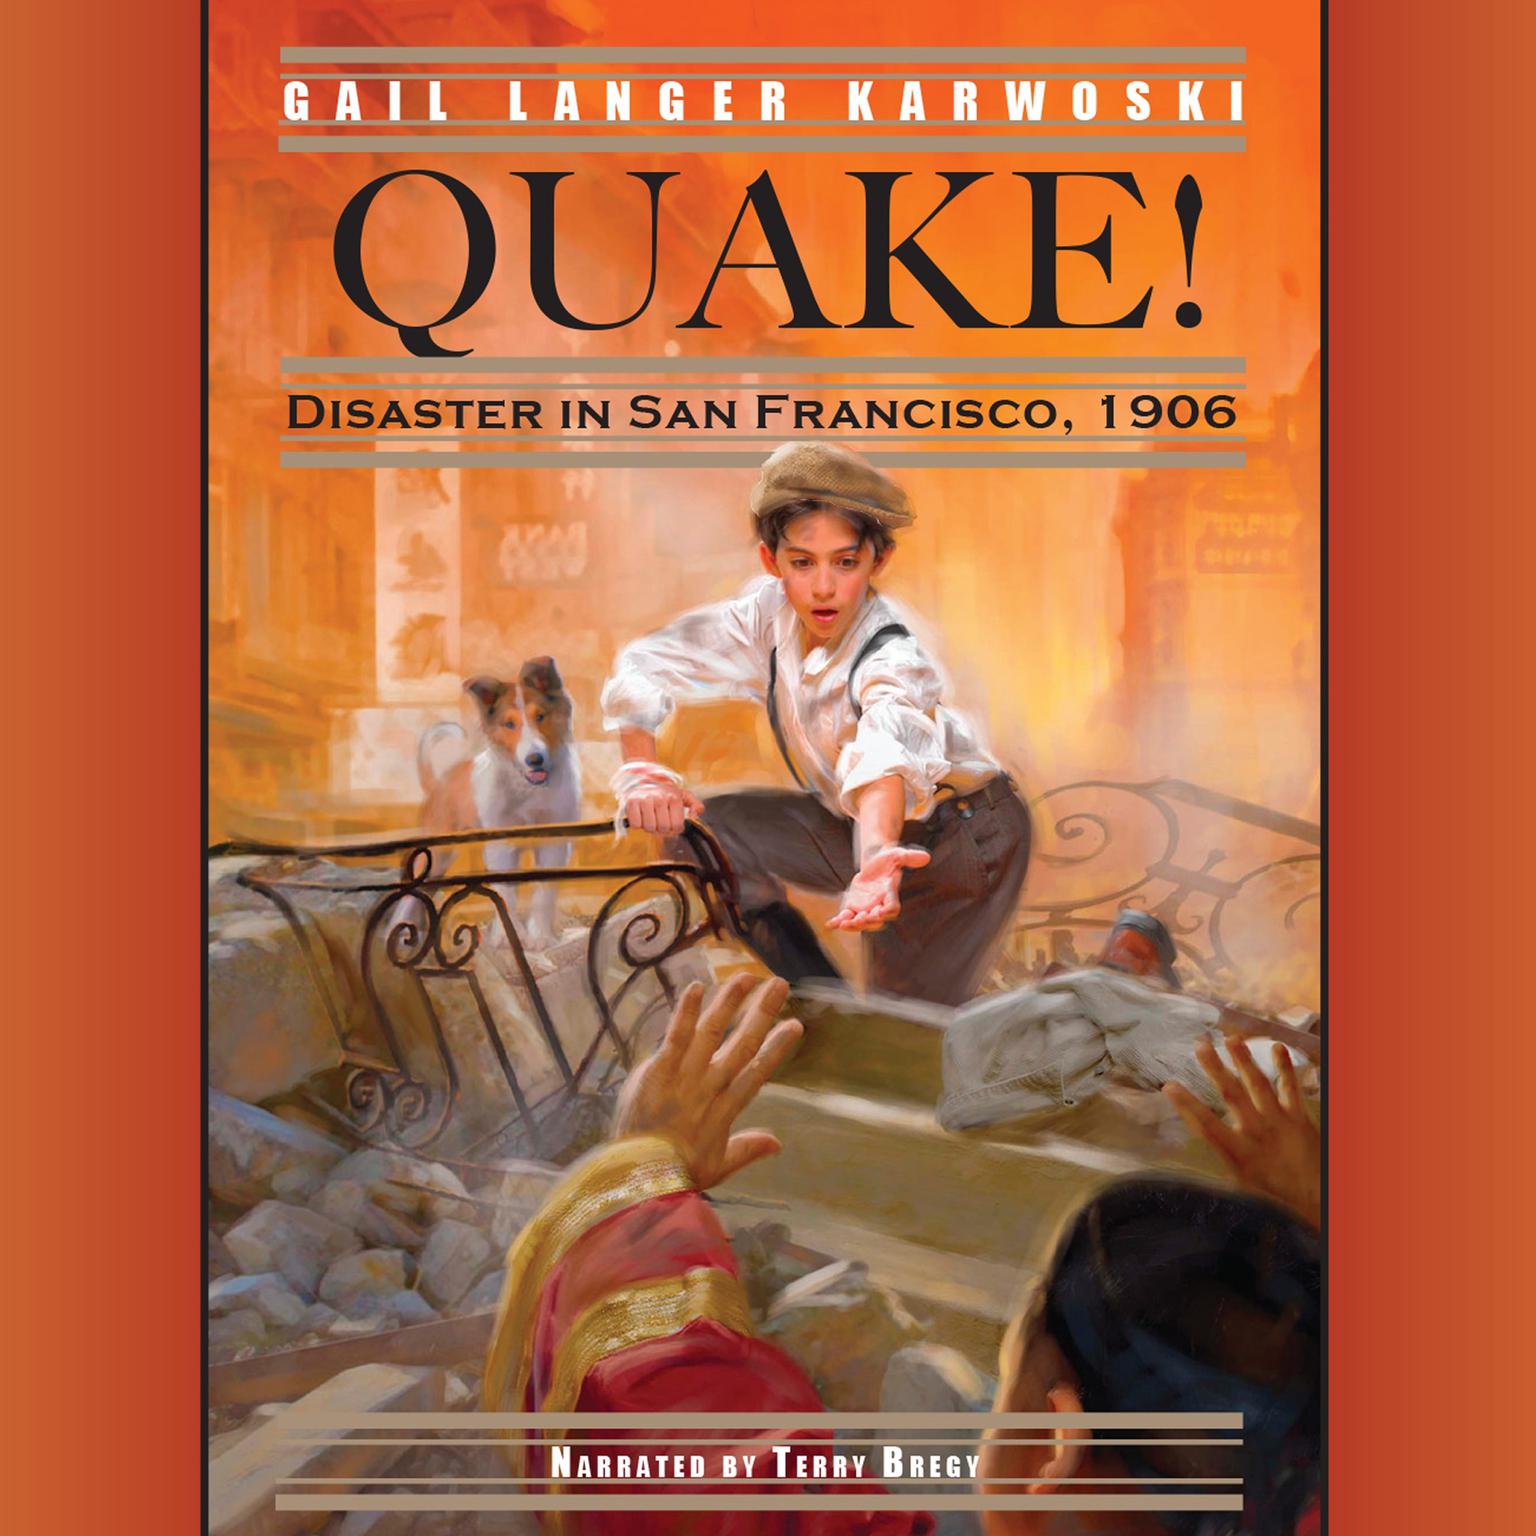 Quake!: Disaster in San Francisco, 1906 Audiobook, by Gail Langer Karwoski